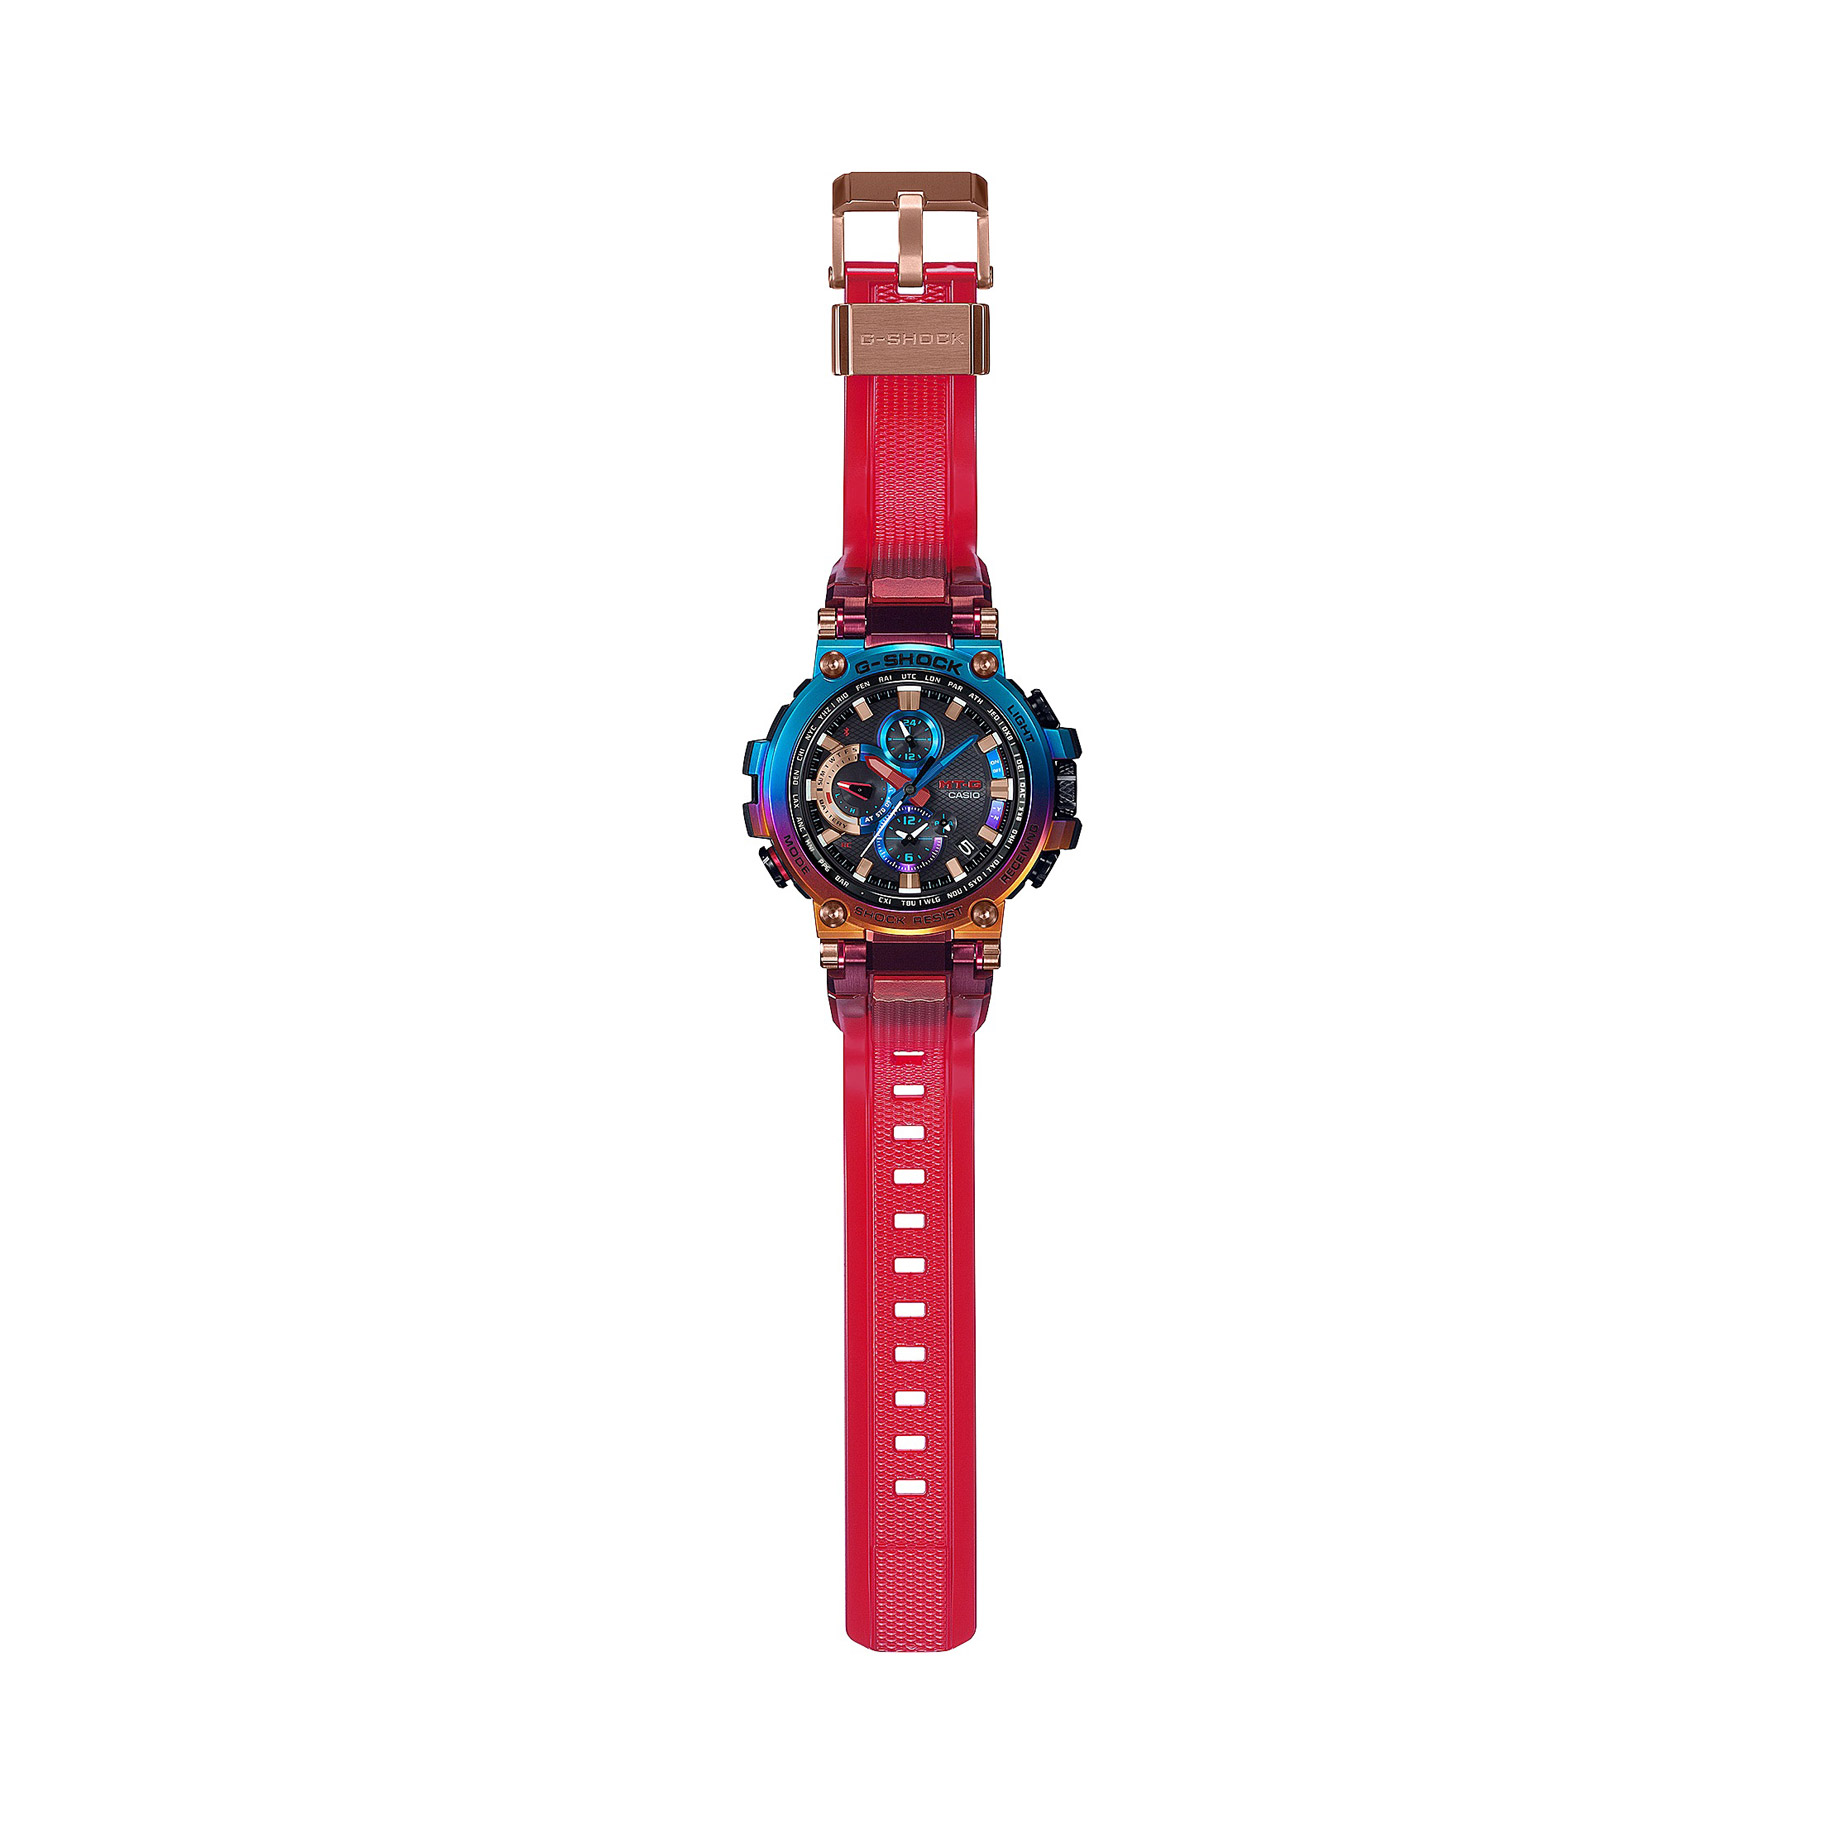 G-SHOCK CASIO 腕時計　MT-G 火山雷　新品未使用